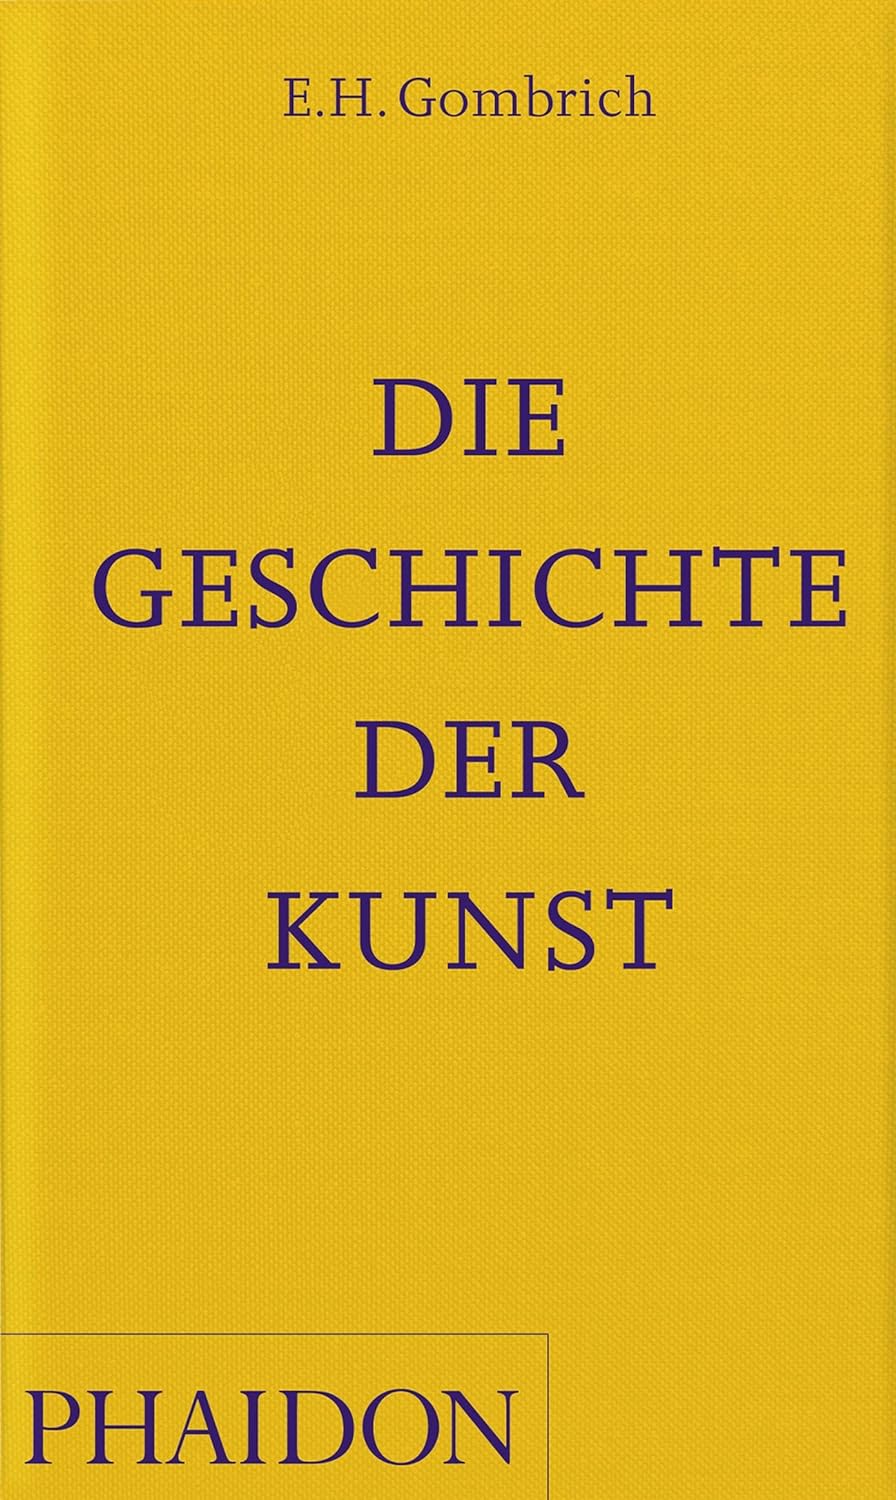 "Die Geschichte der Kunst" von E. H. Gombrich